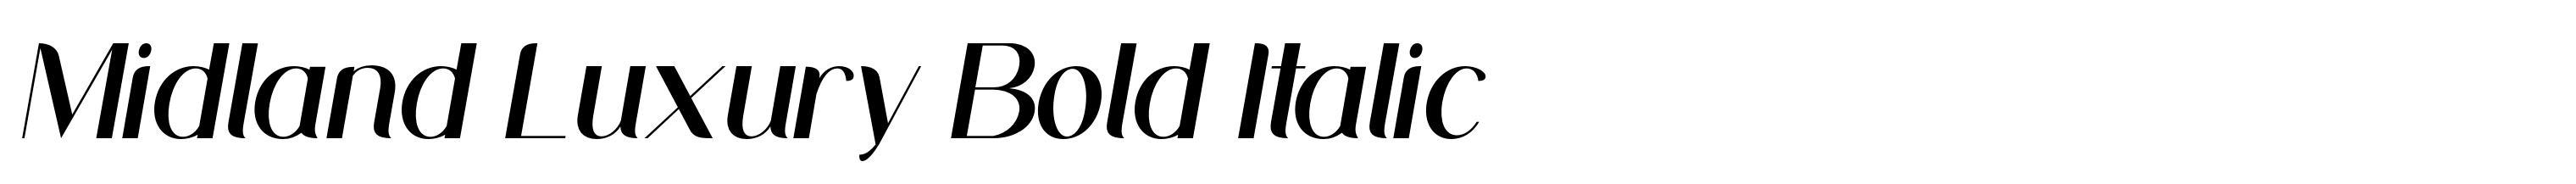 Midland Luxury Bold Italic